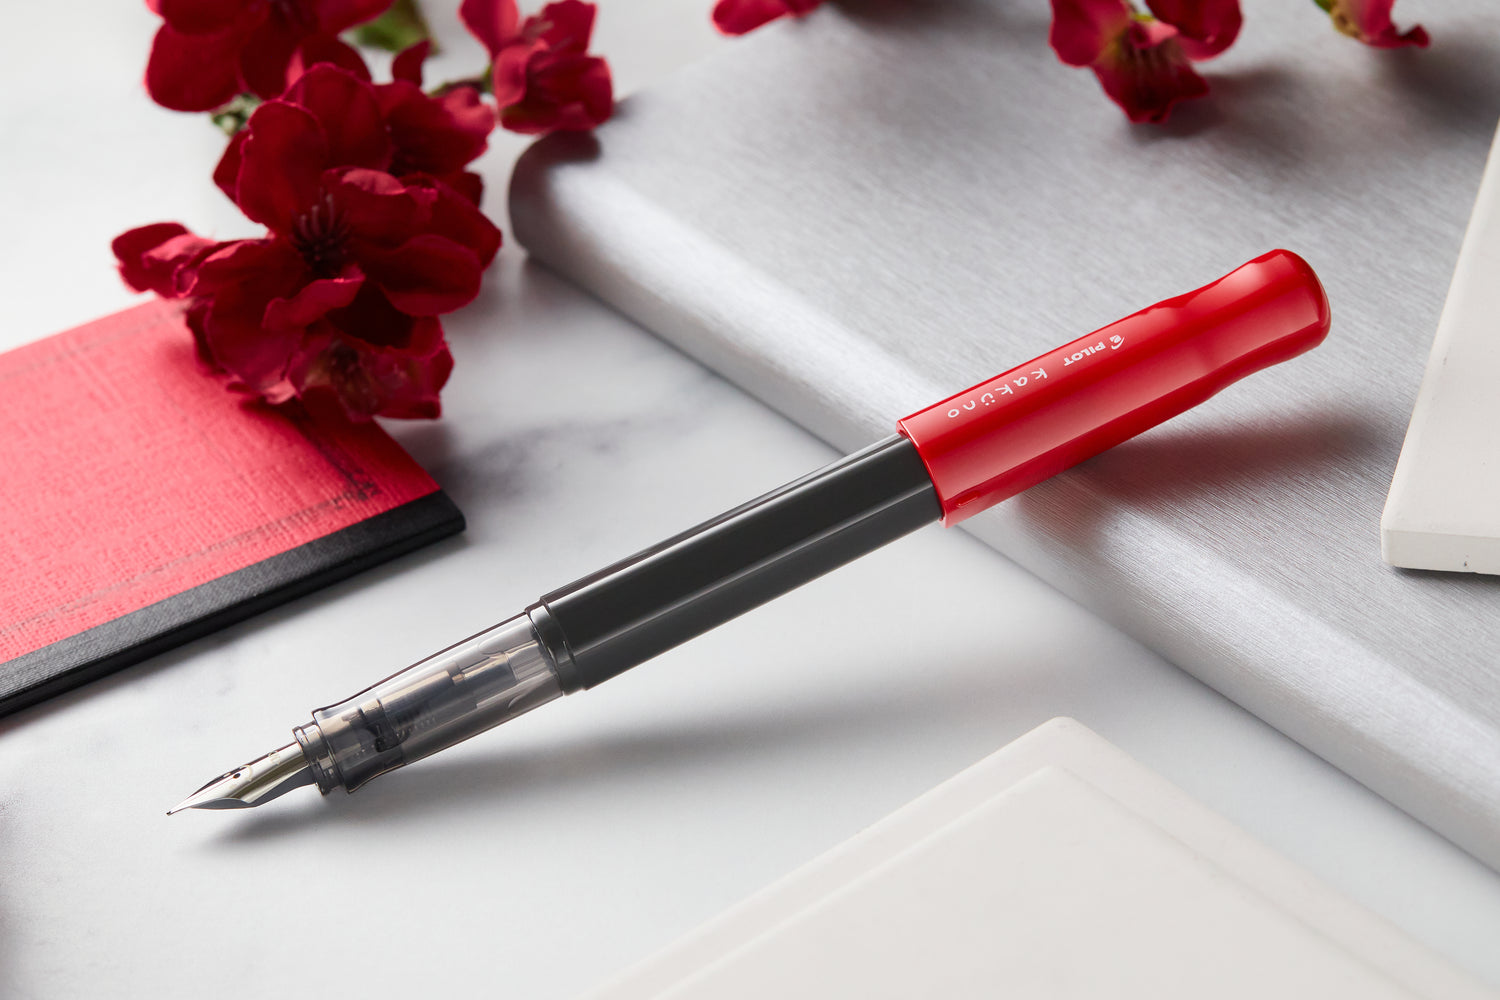 Pilot Kakuno Orange/Grey Fountain Pen – Pen Classics